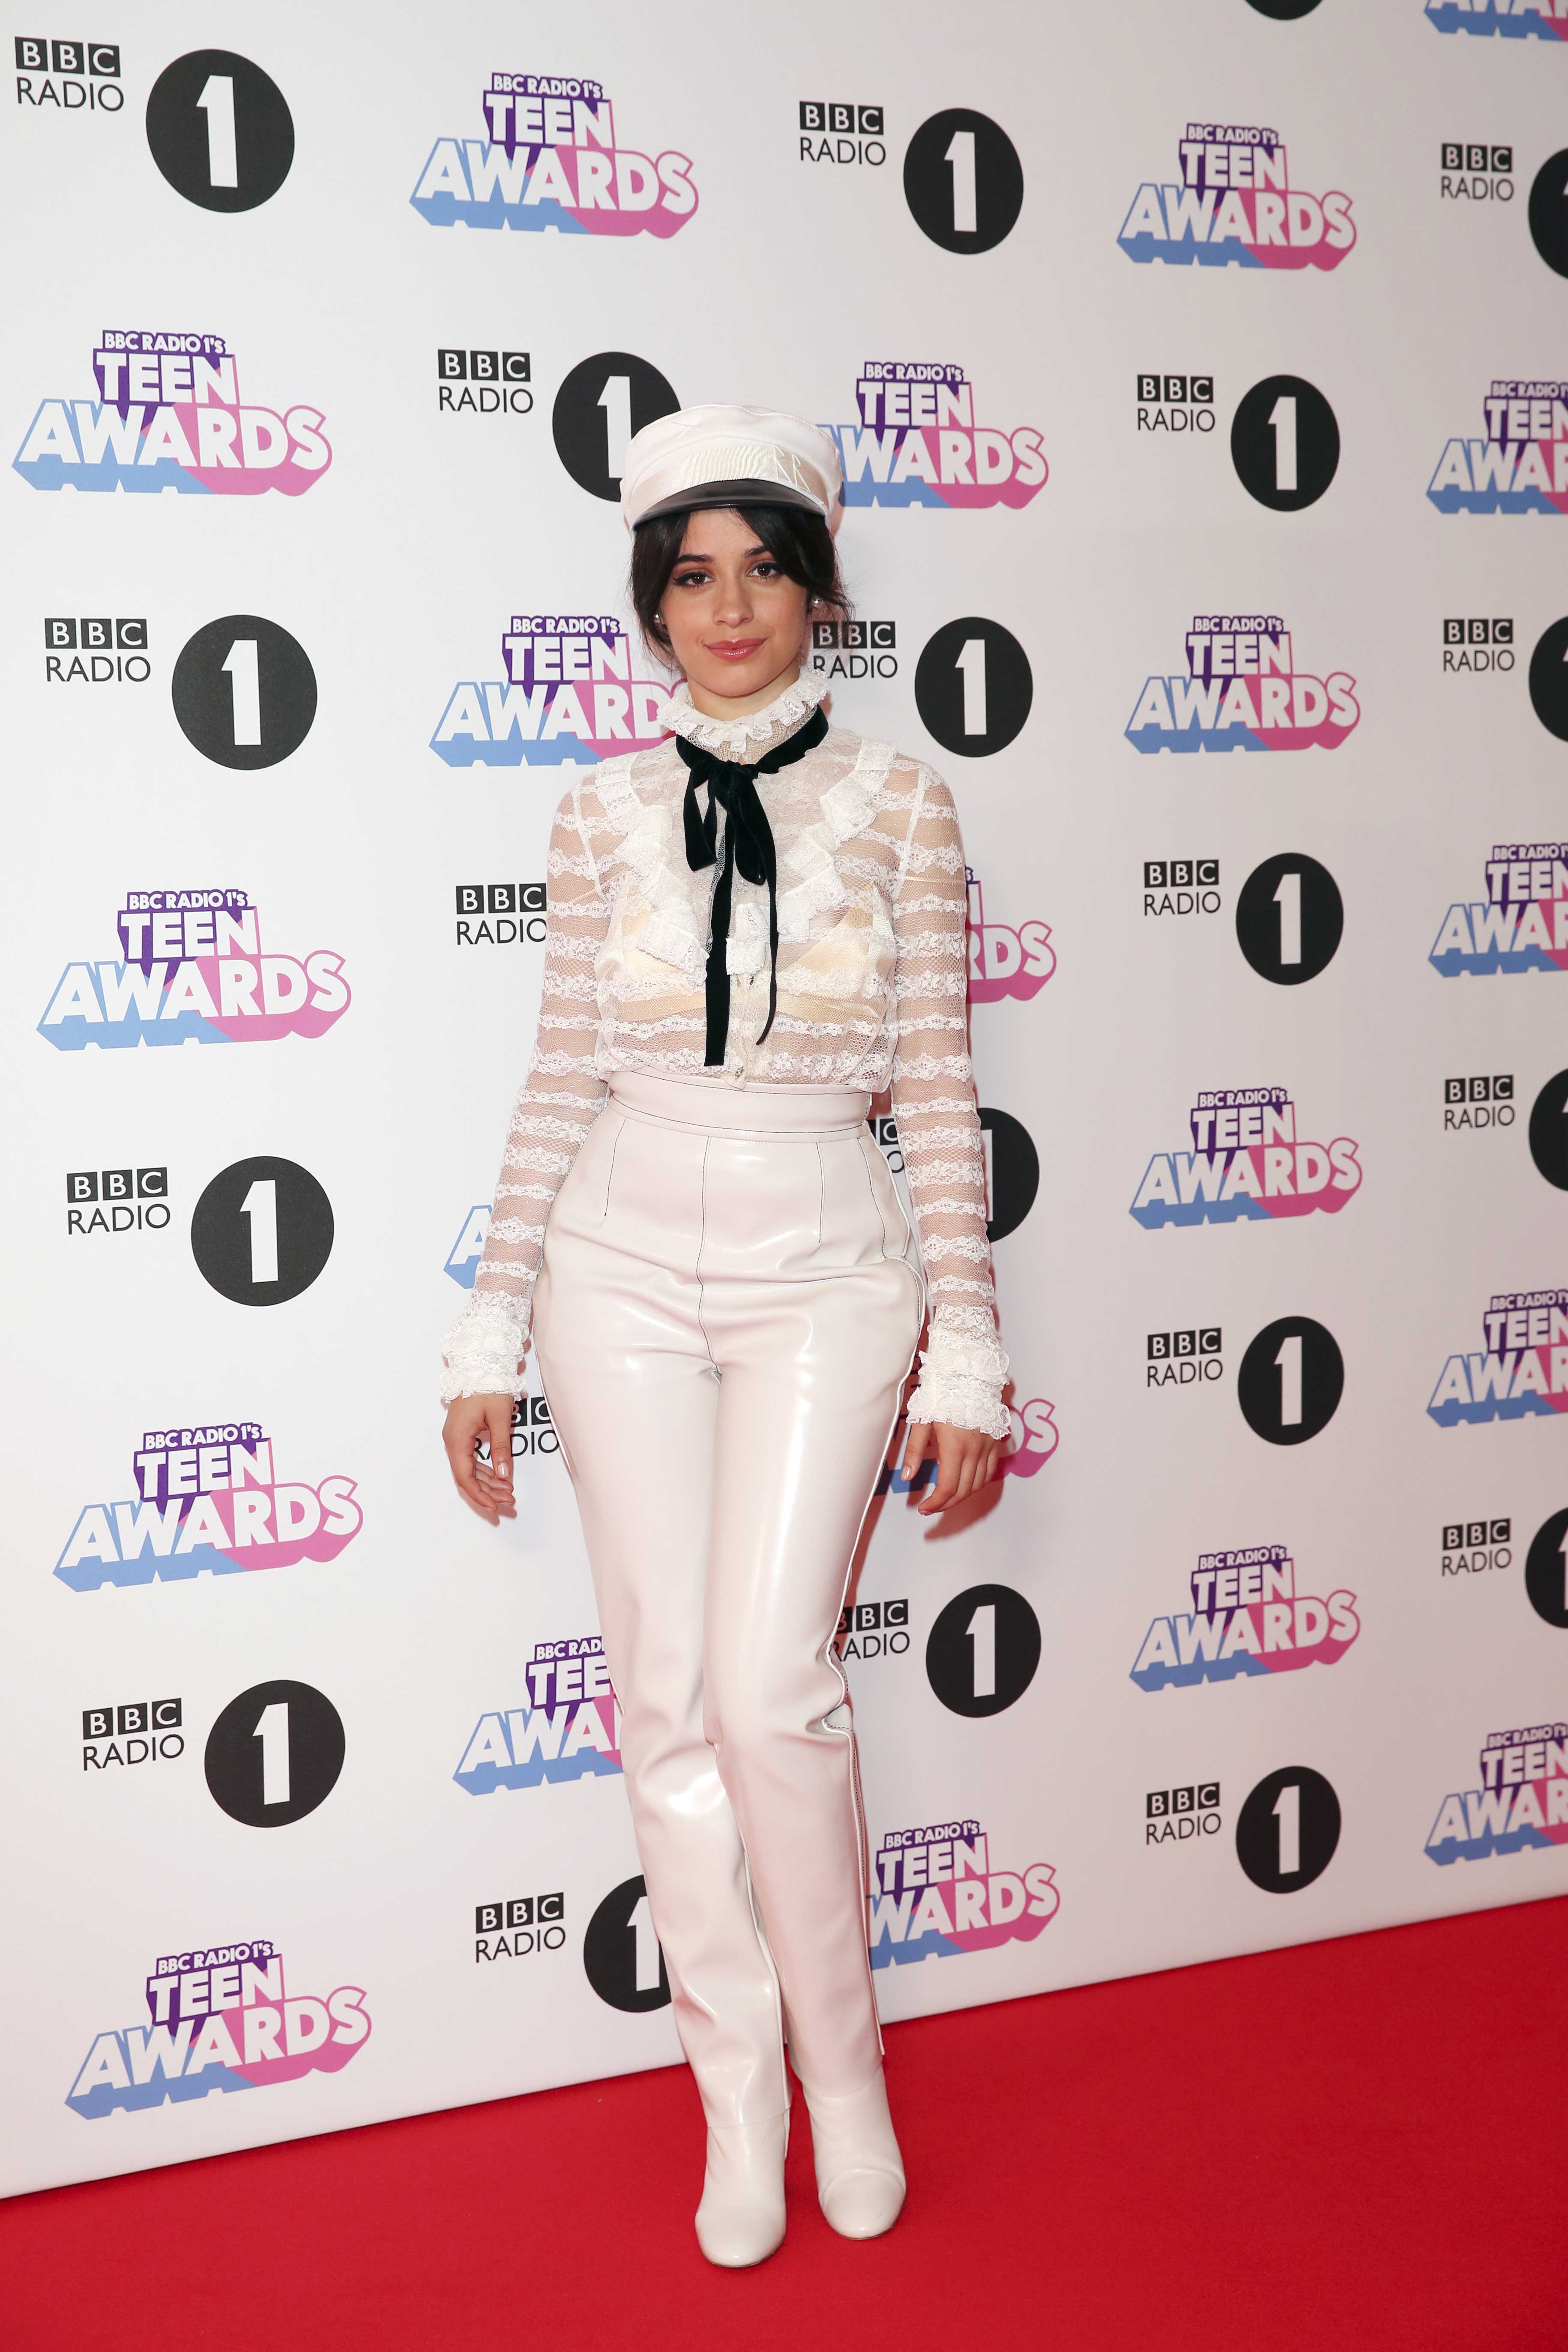 Camila Cabello attends BBC Radio 1 Teen Awards